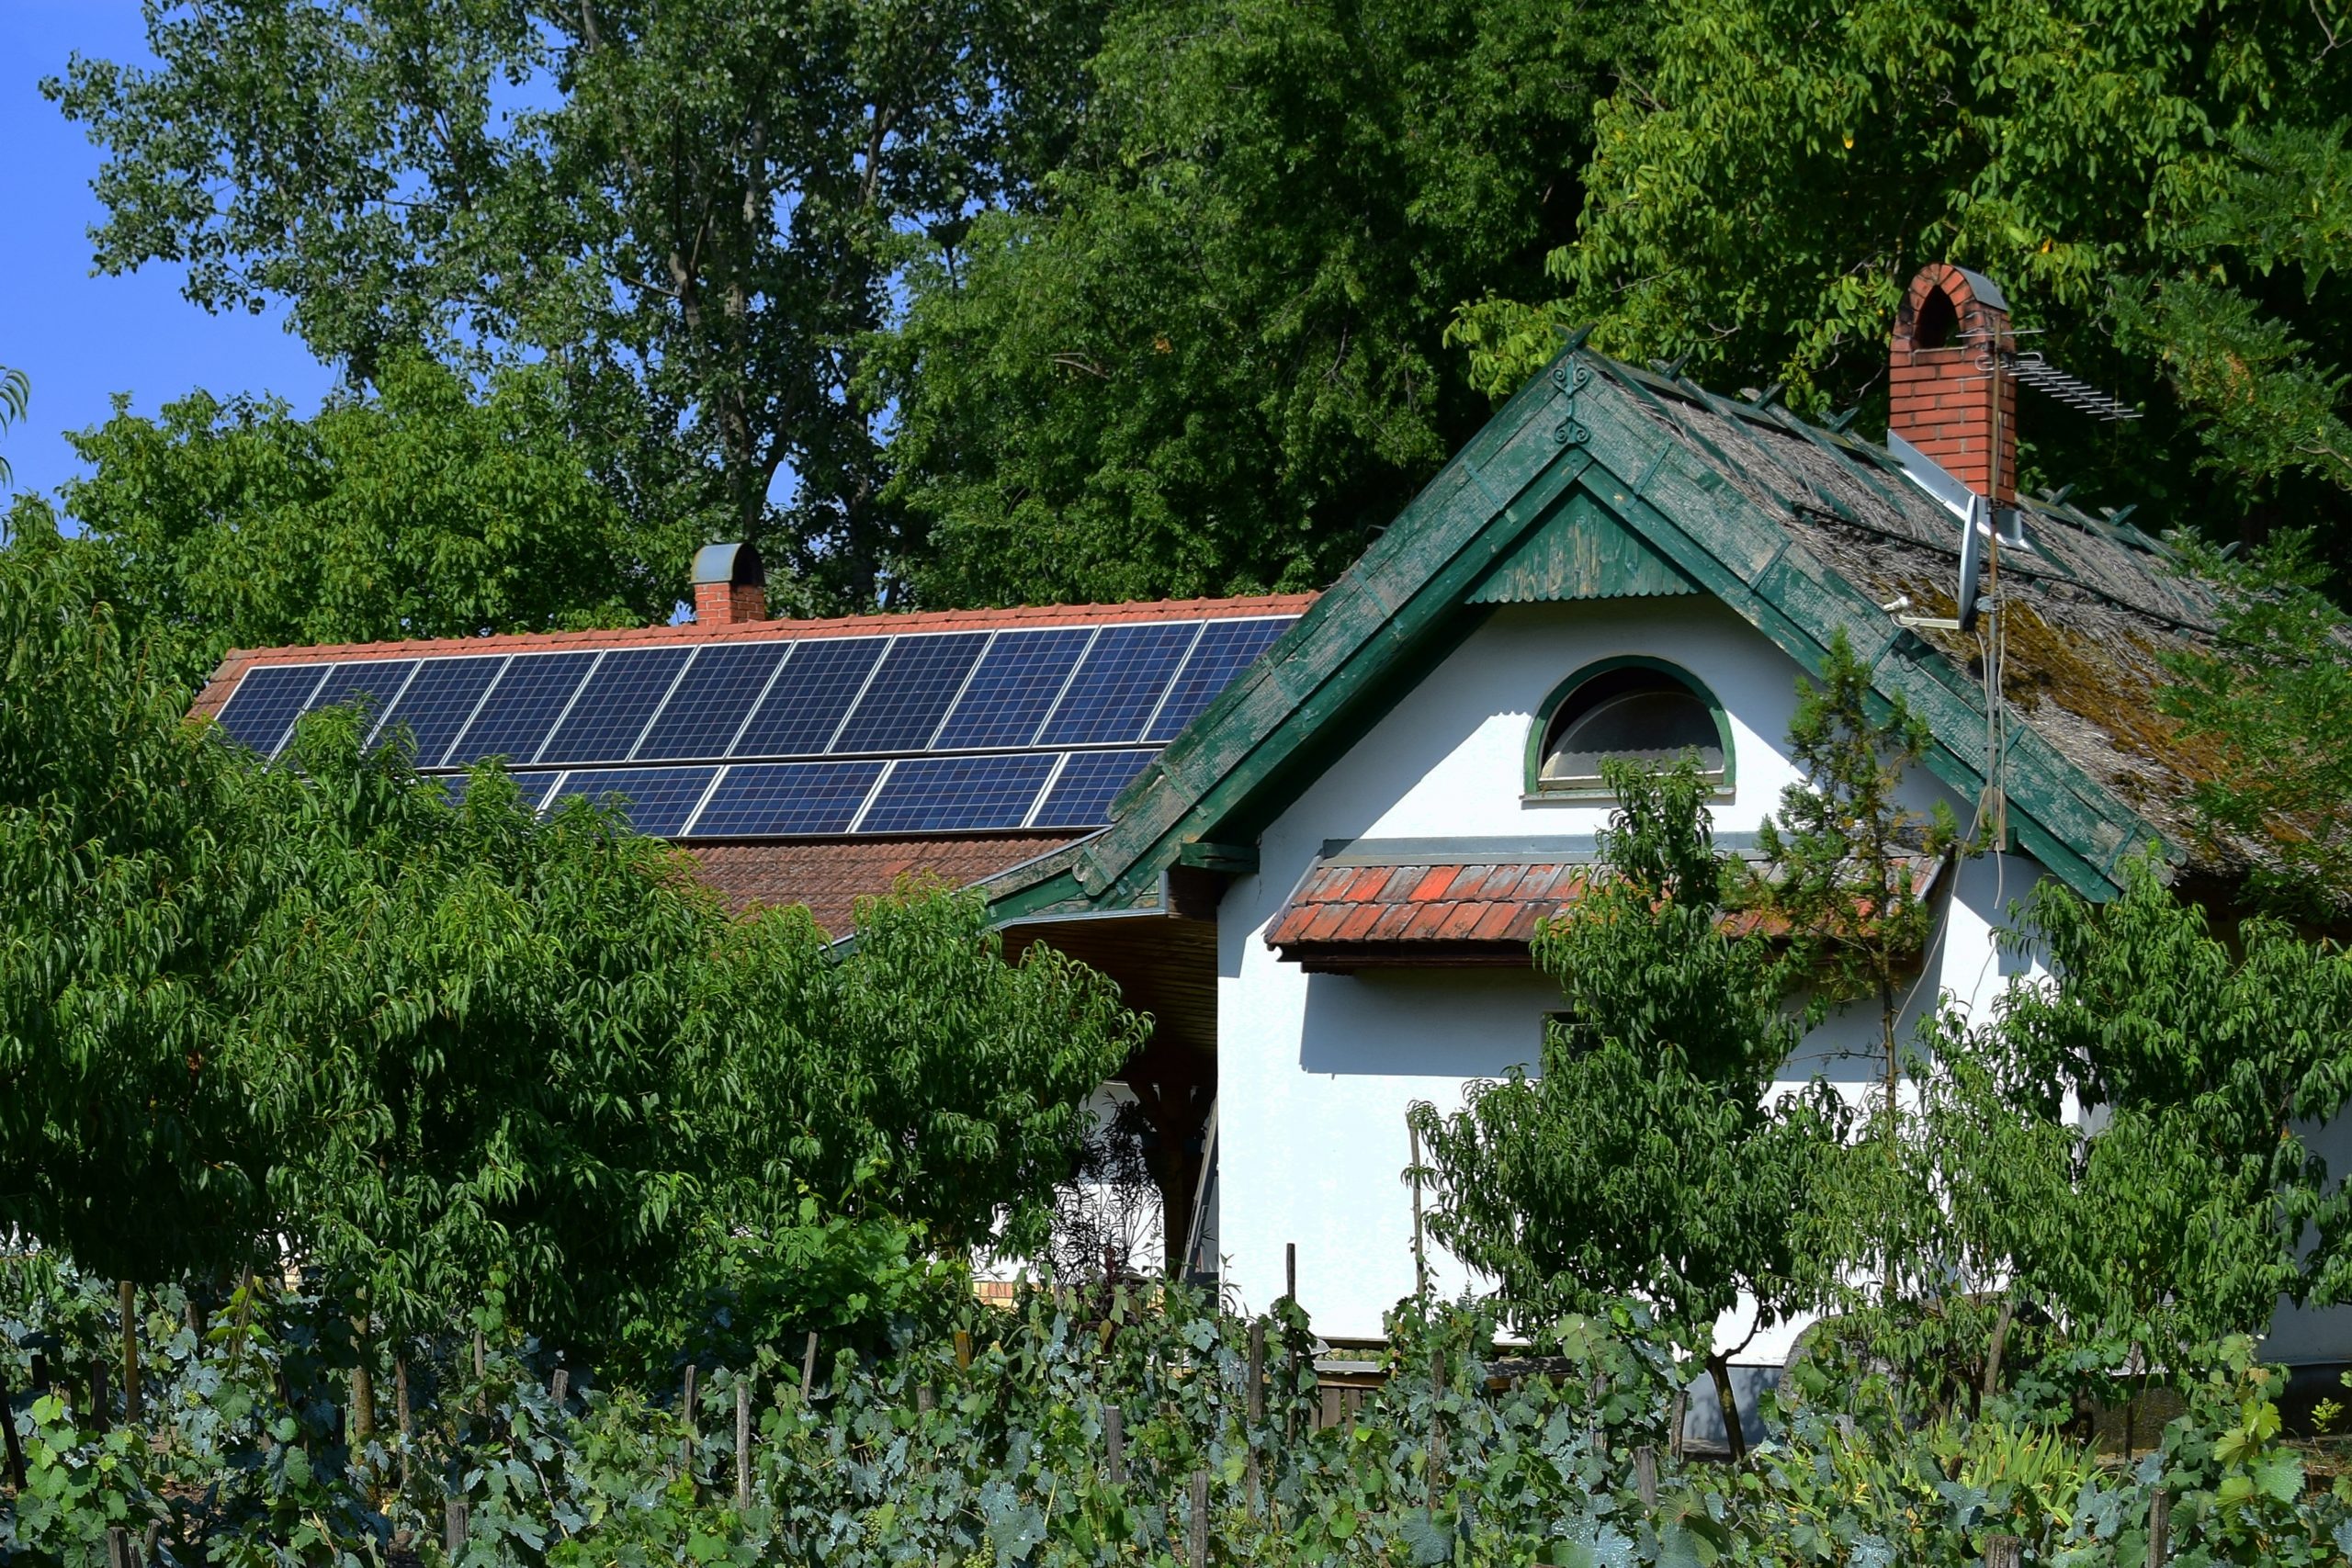 Zweite Phase der Solarausschreibung für Wohngebäude ab November verfügbar